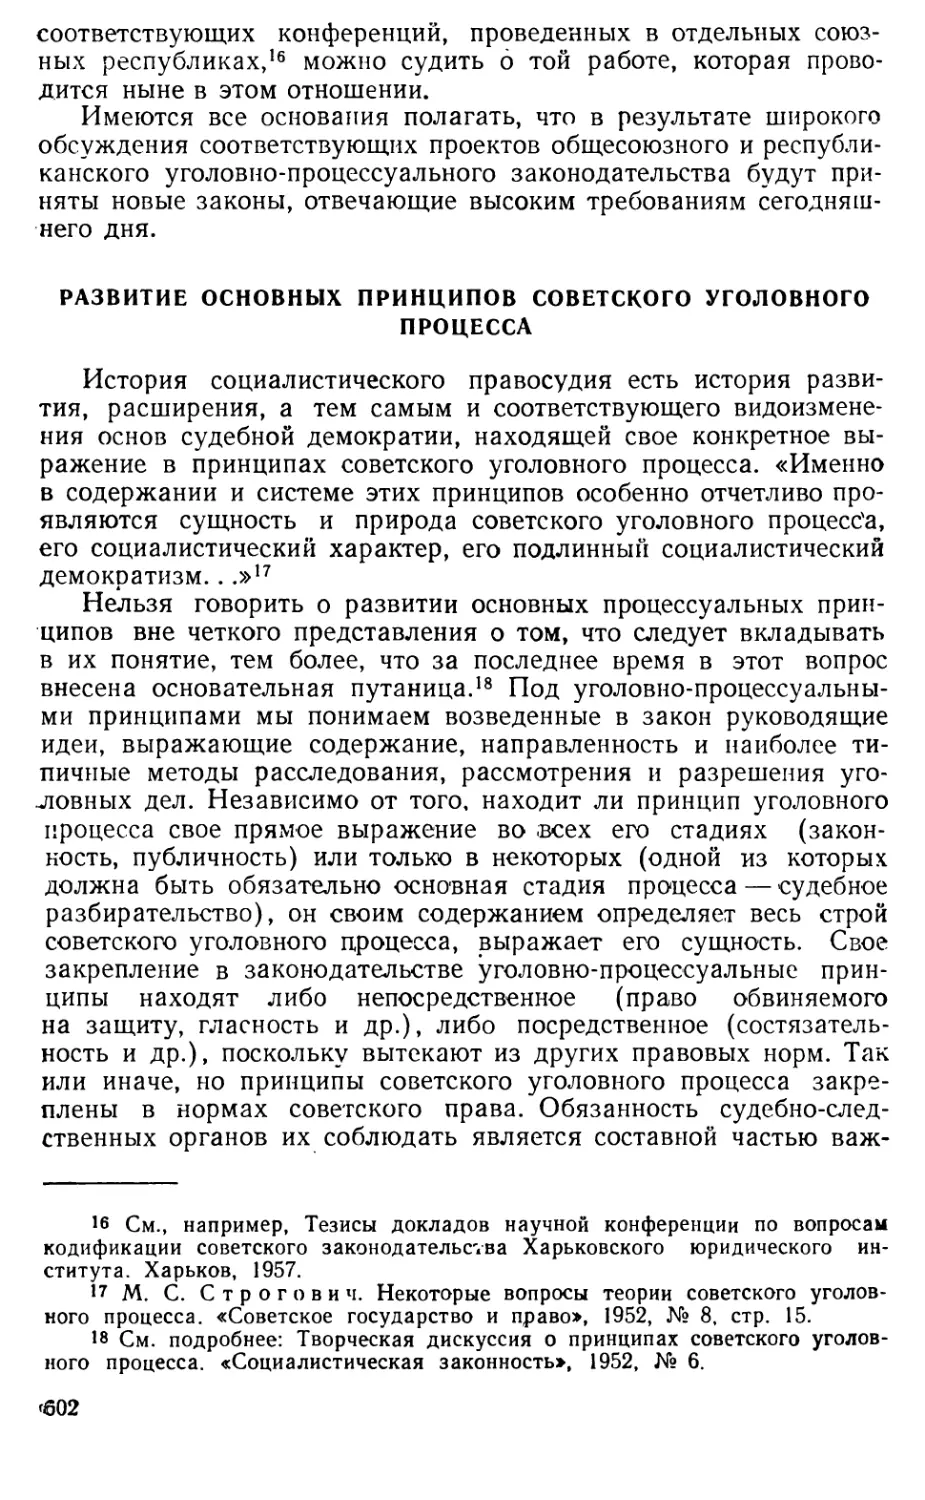 Развитие основных принципов советского уголовного процесса.